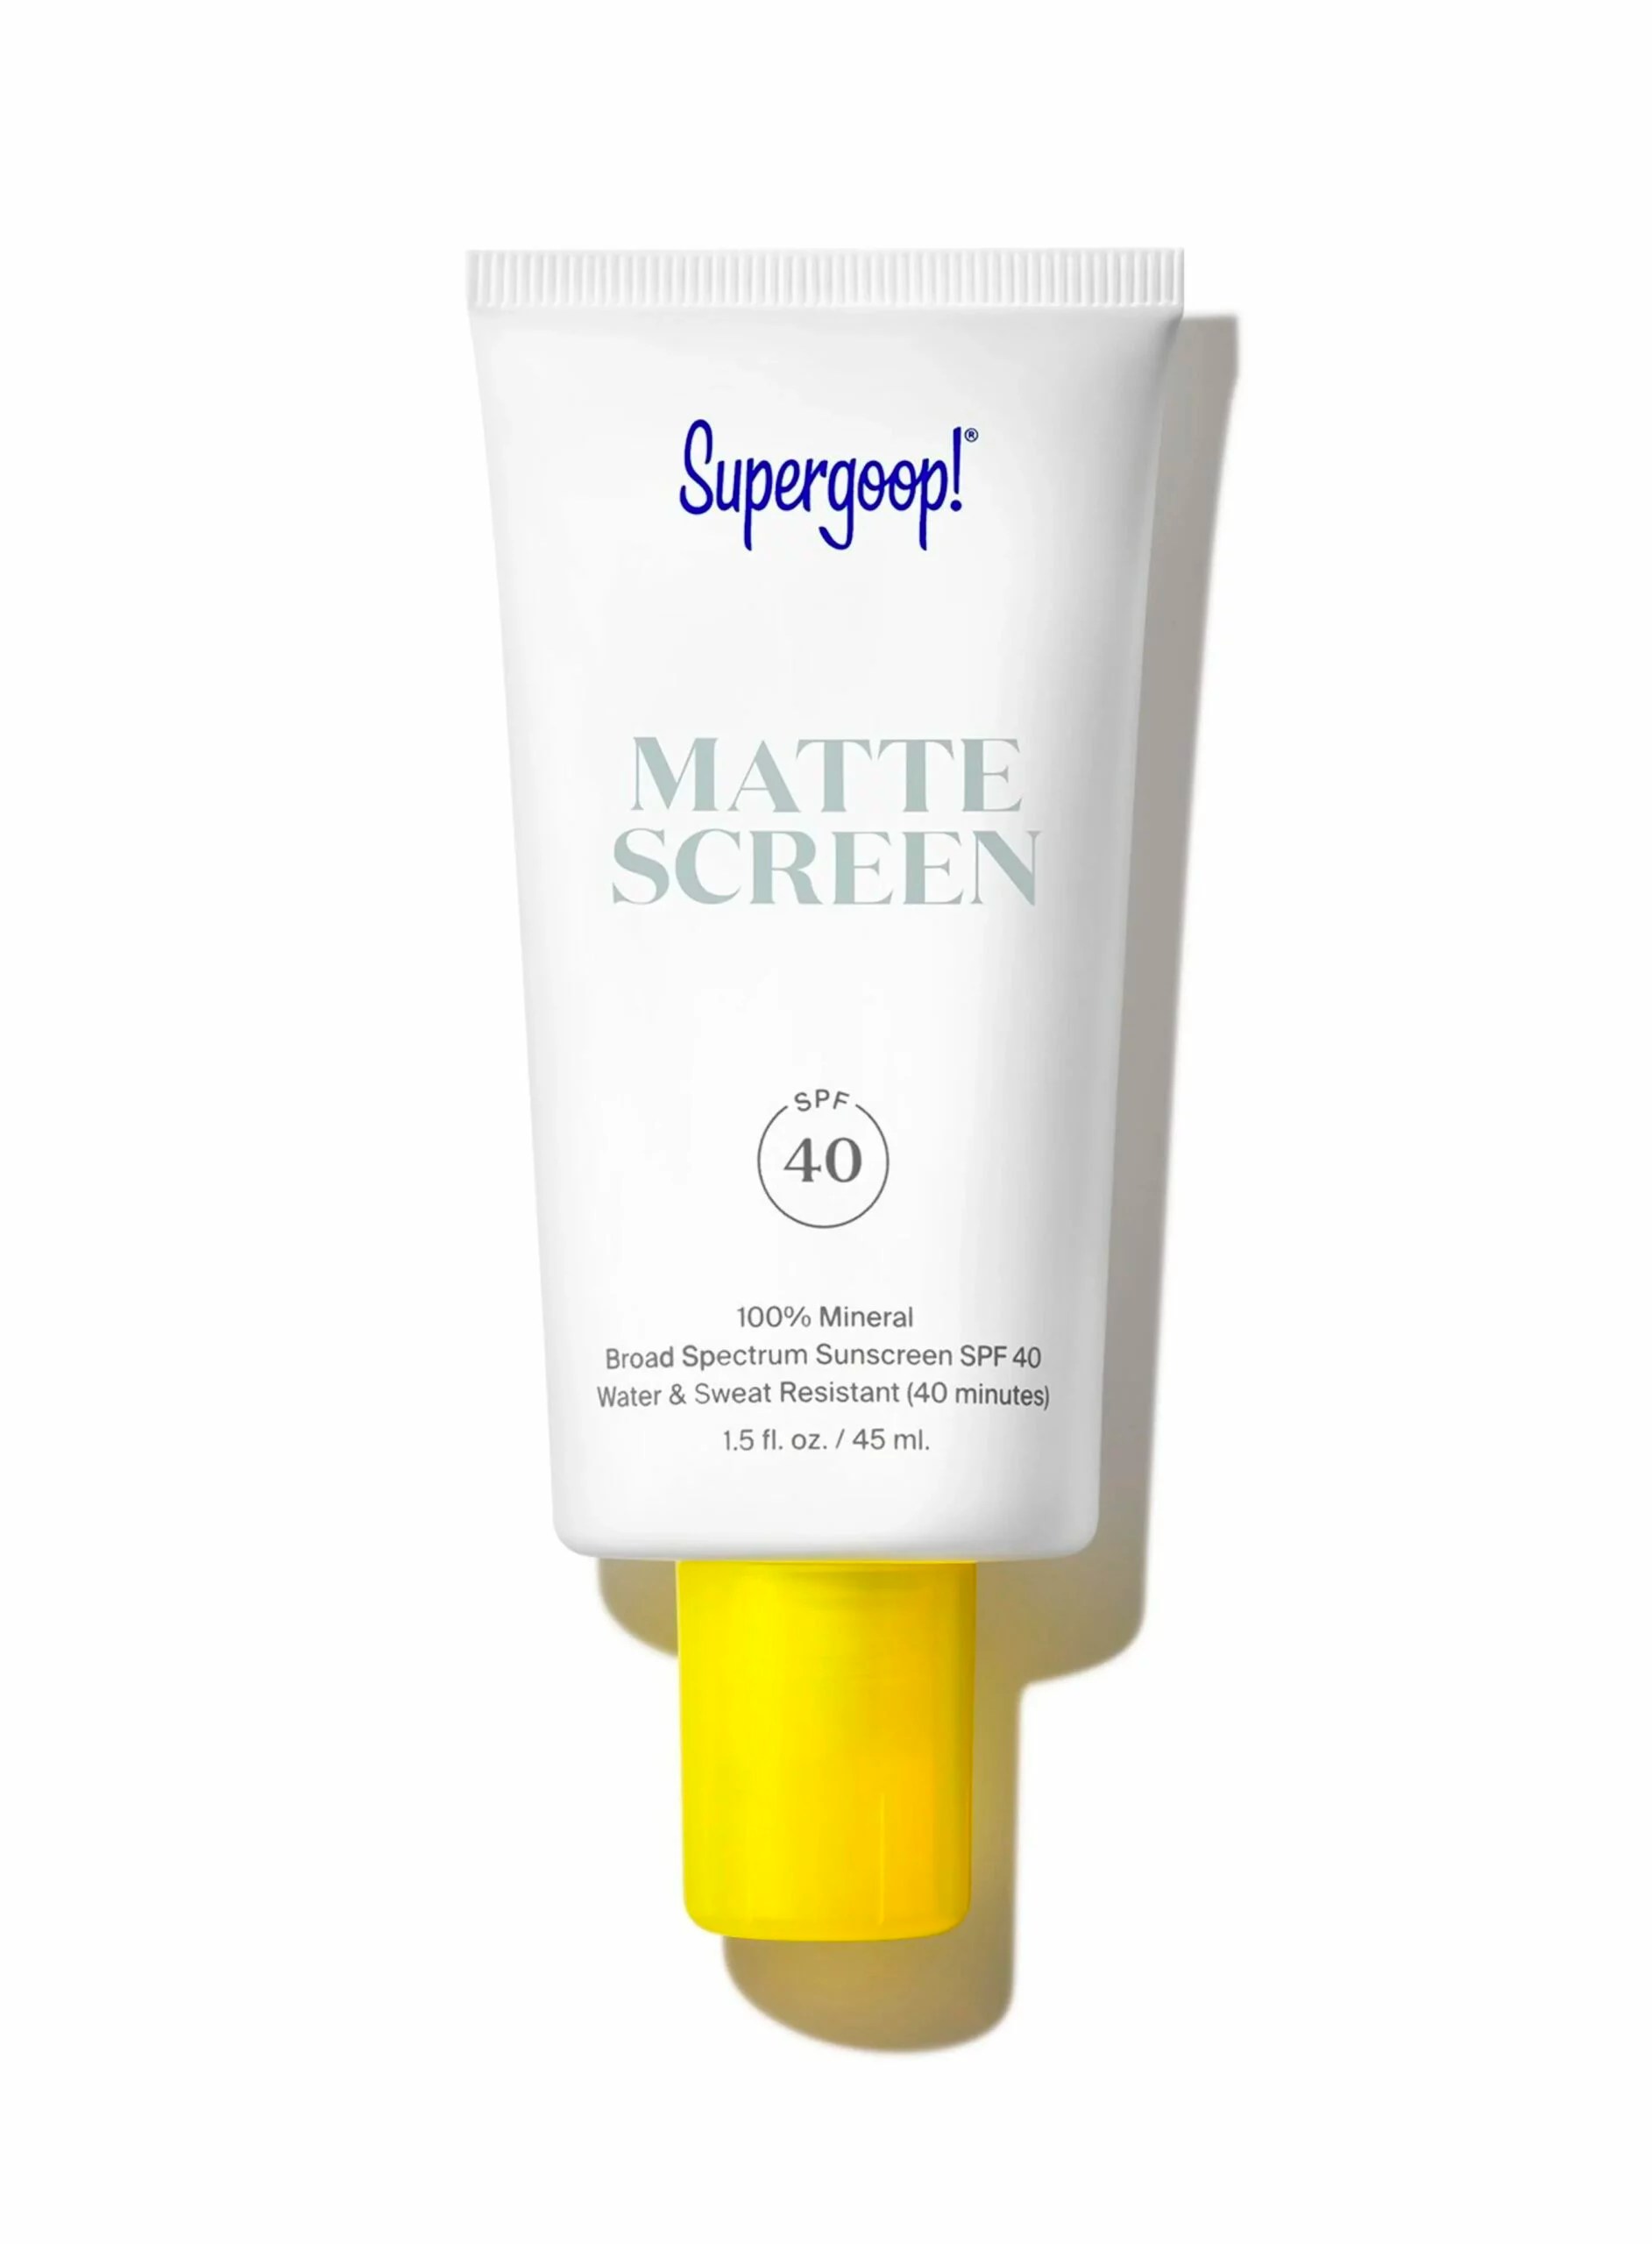 Supergoop, Mattescreen Sunscreen SPF 40, sunscreens for acne prone skin